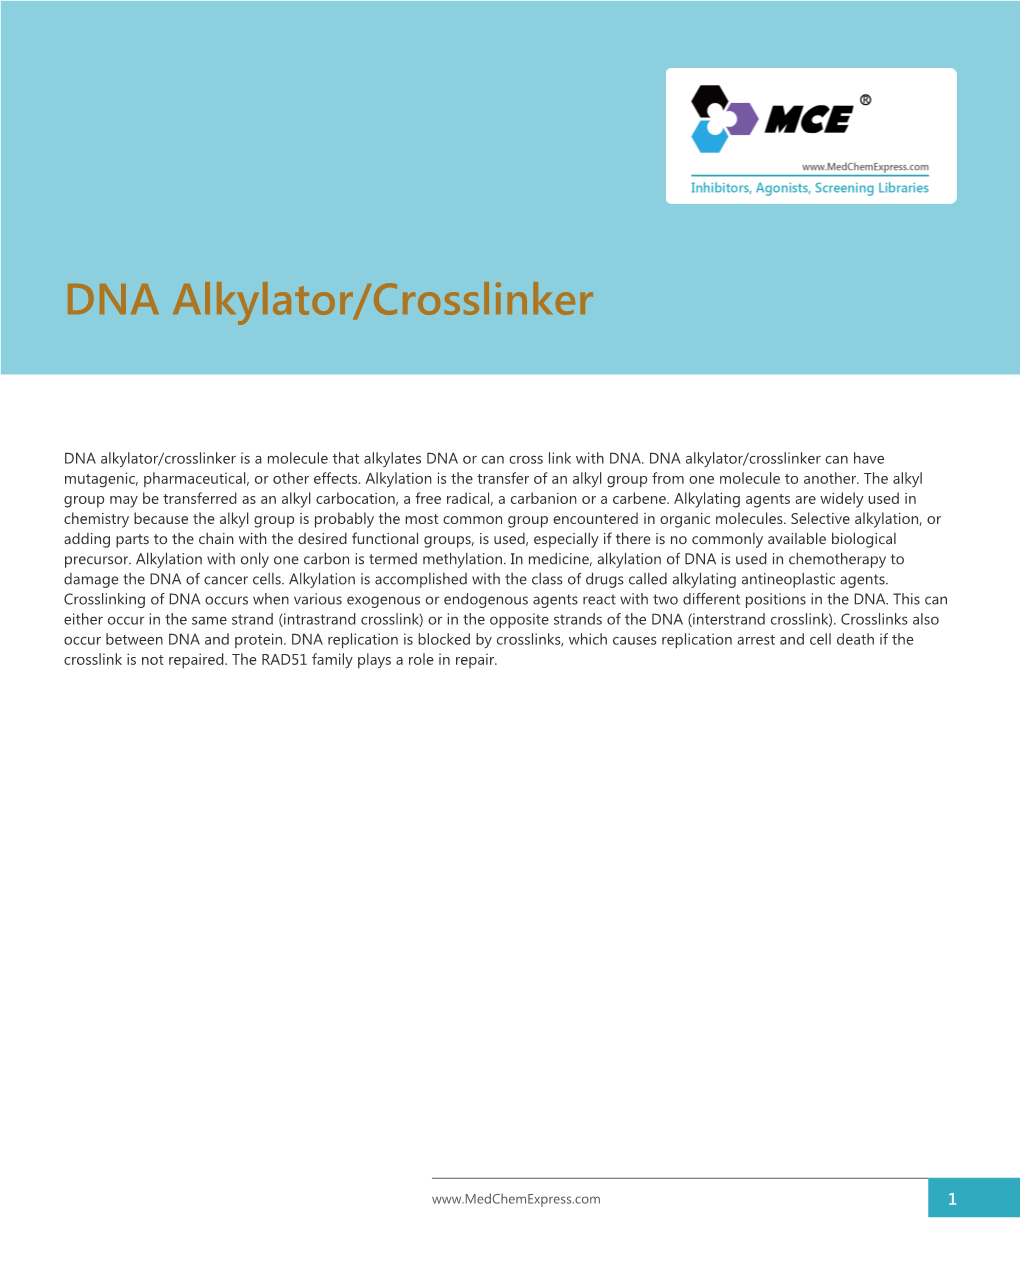 DNA Alkylator/Crosslinker